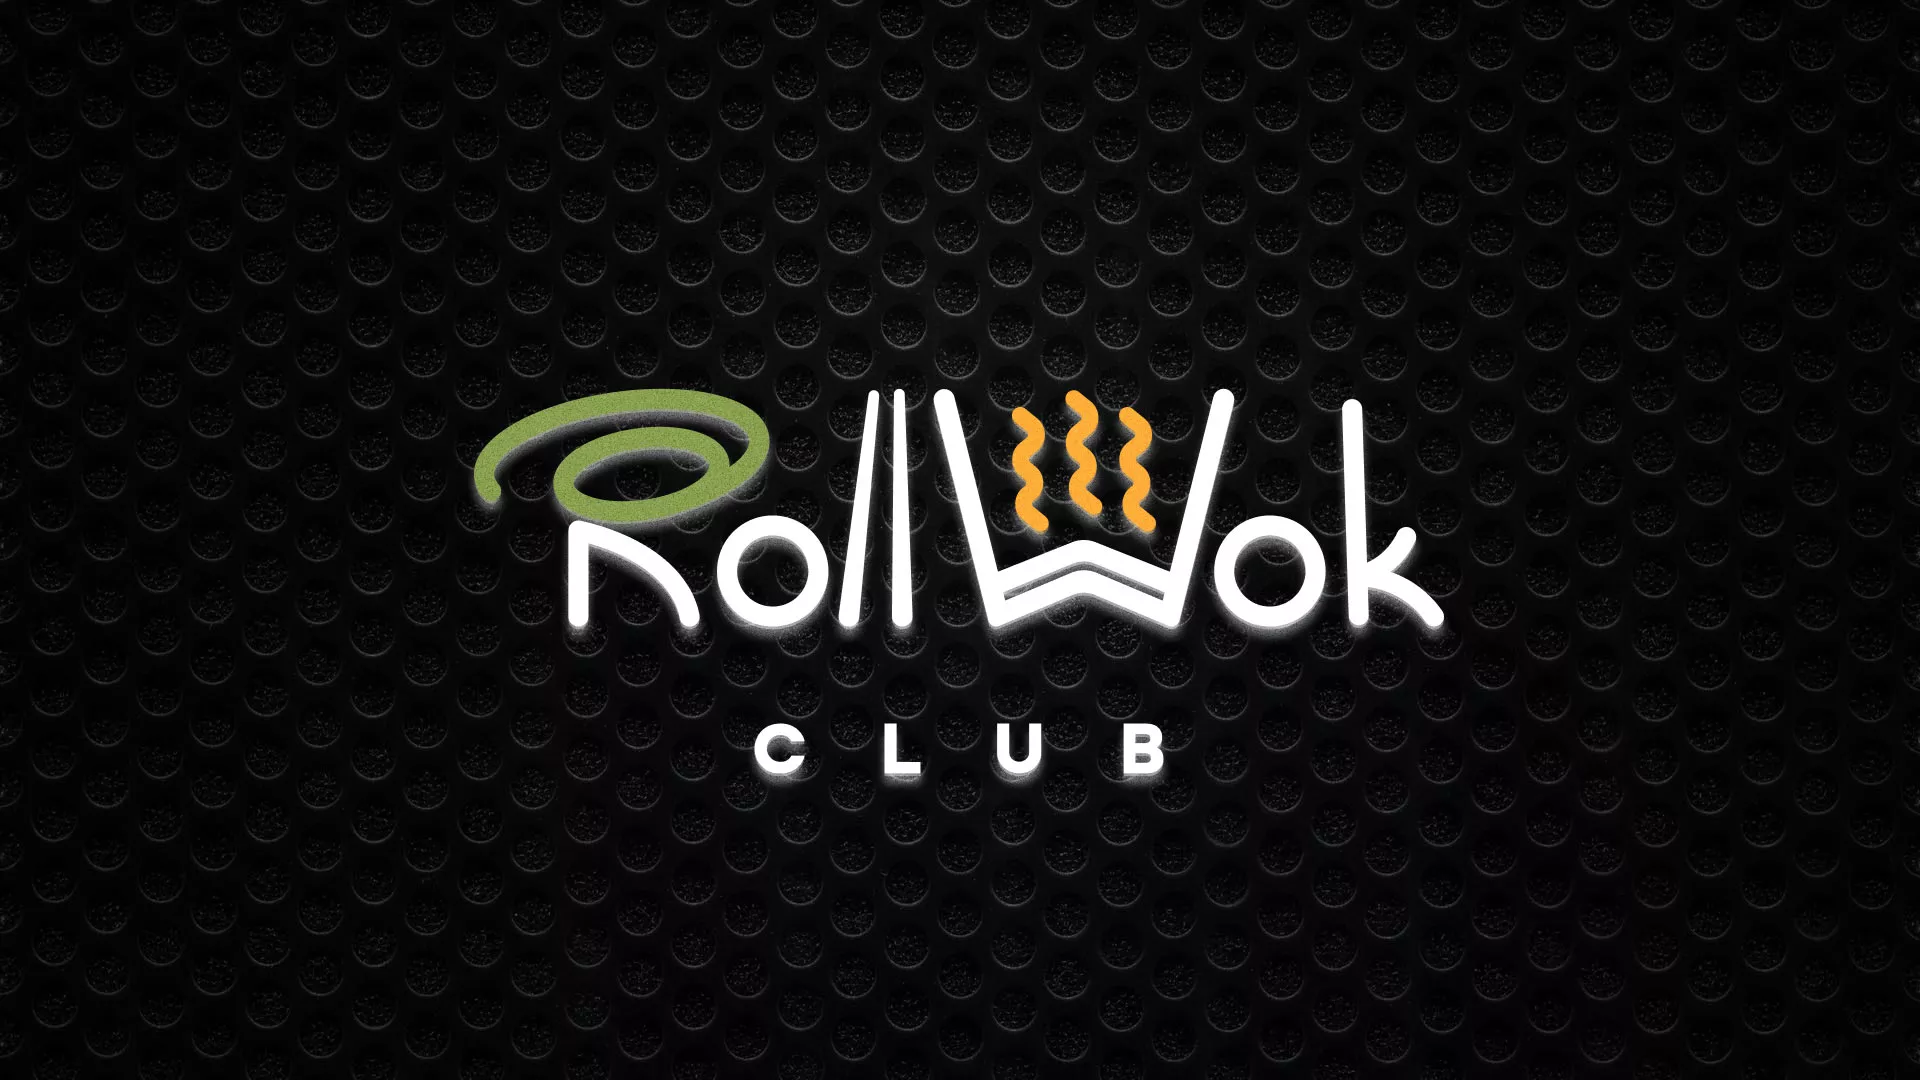 Брендирование торговых точек суши-бара «Roll Wok Club» в Санкт-Петербурге